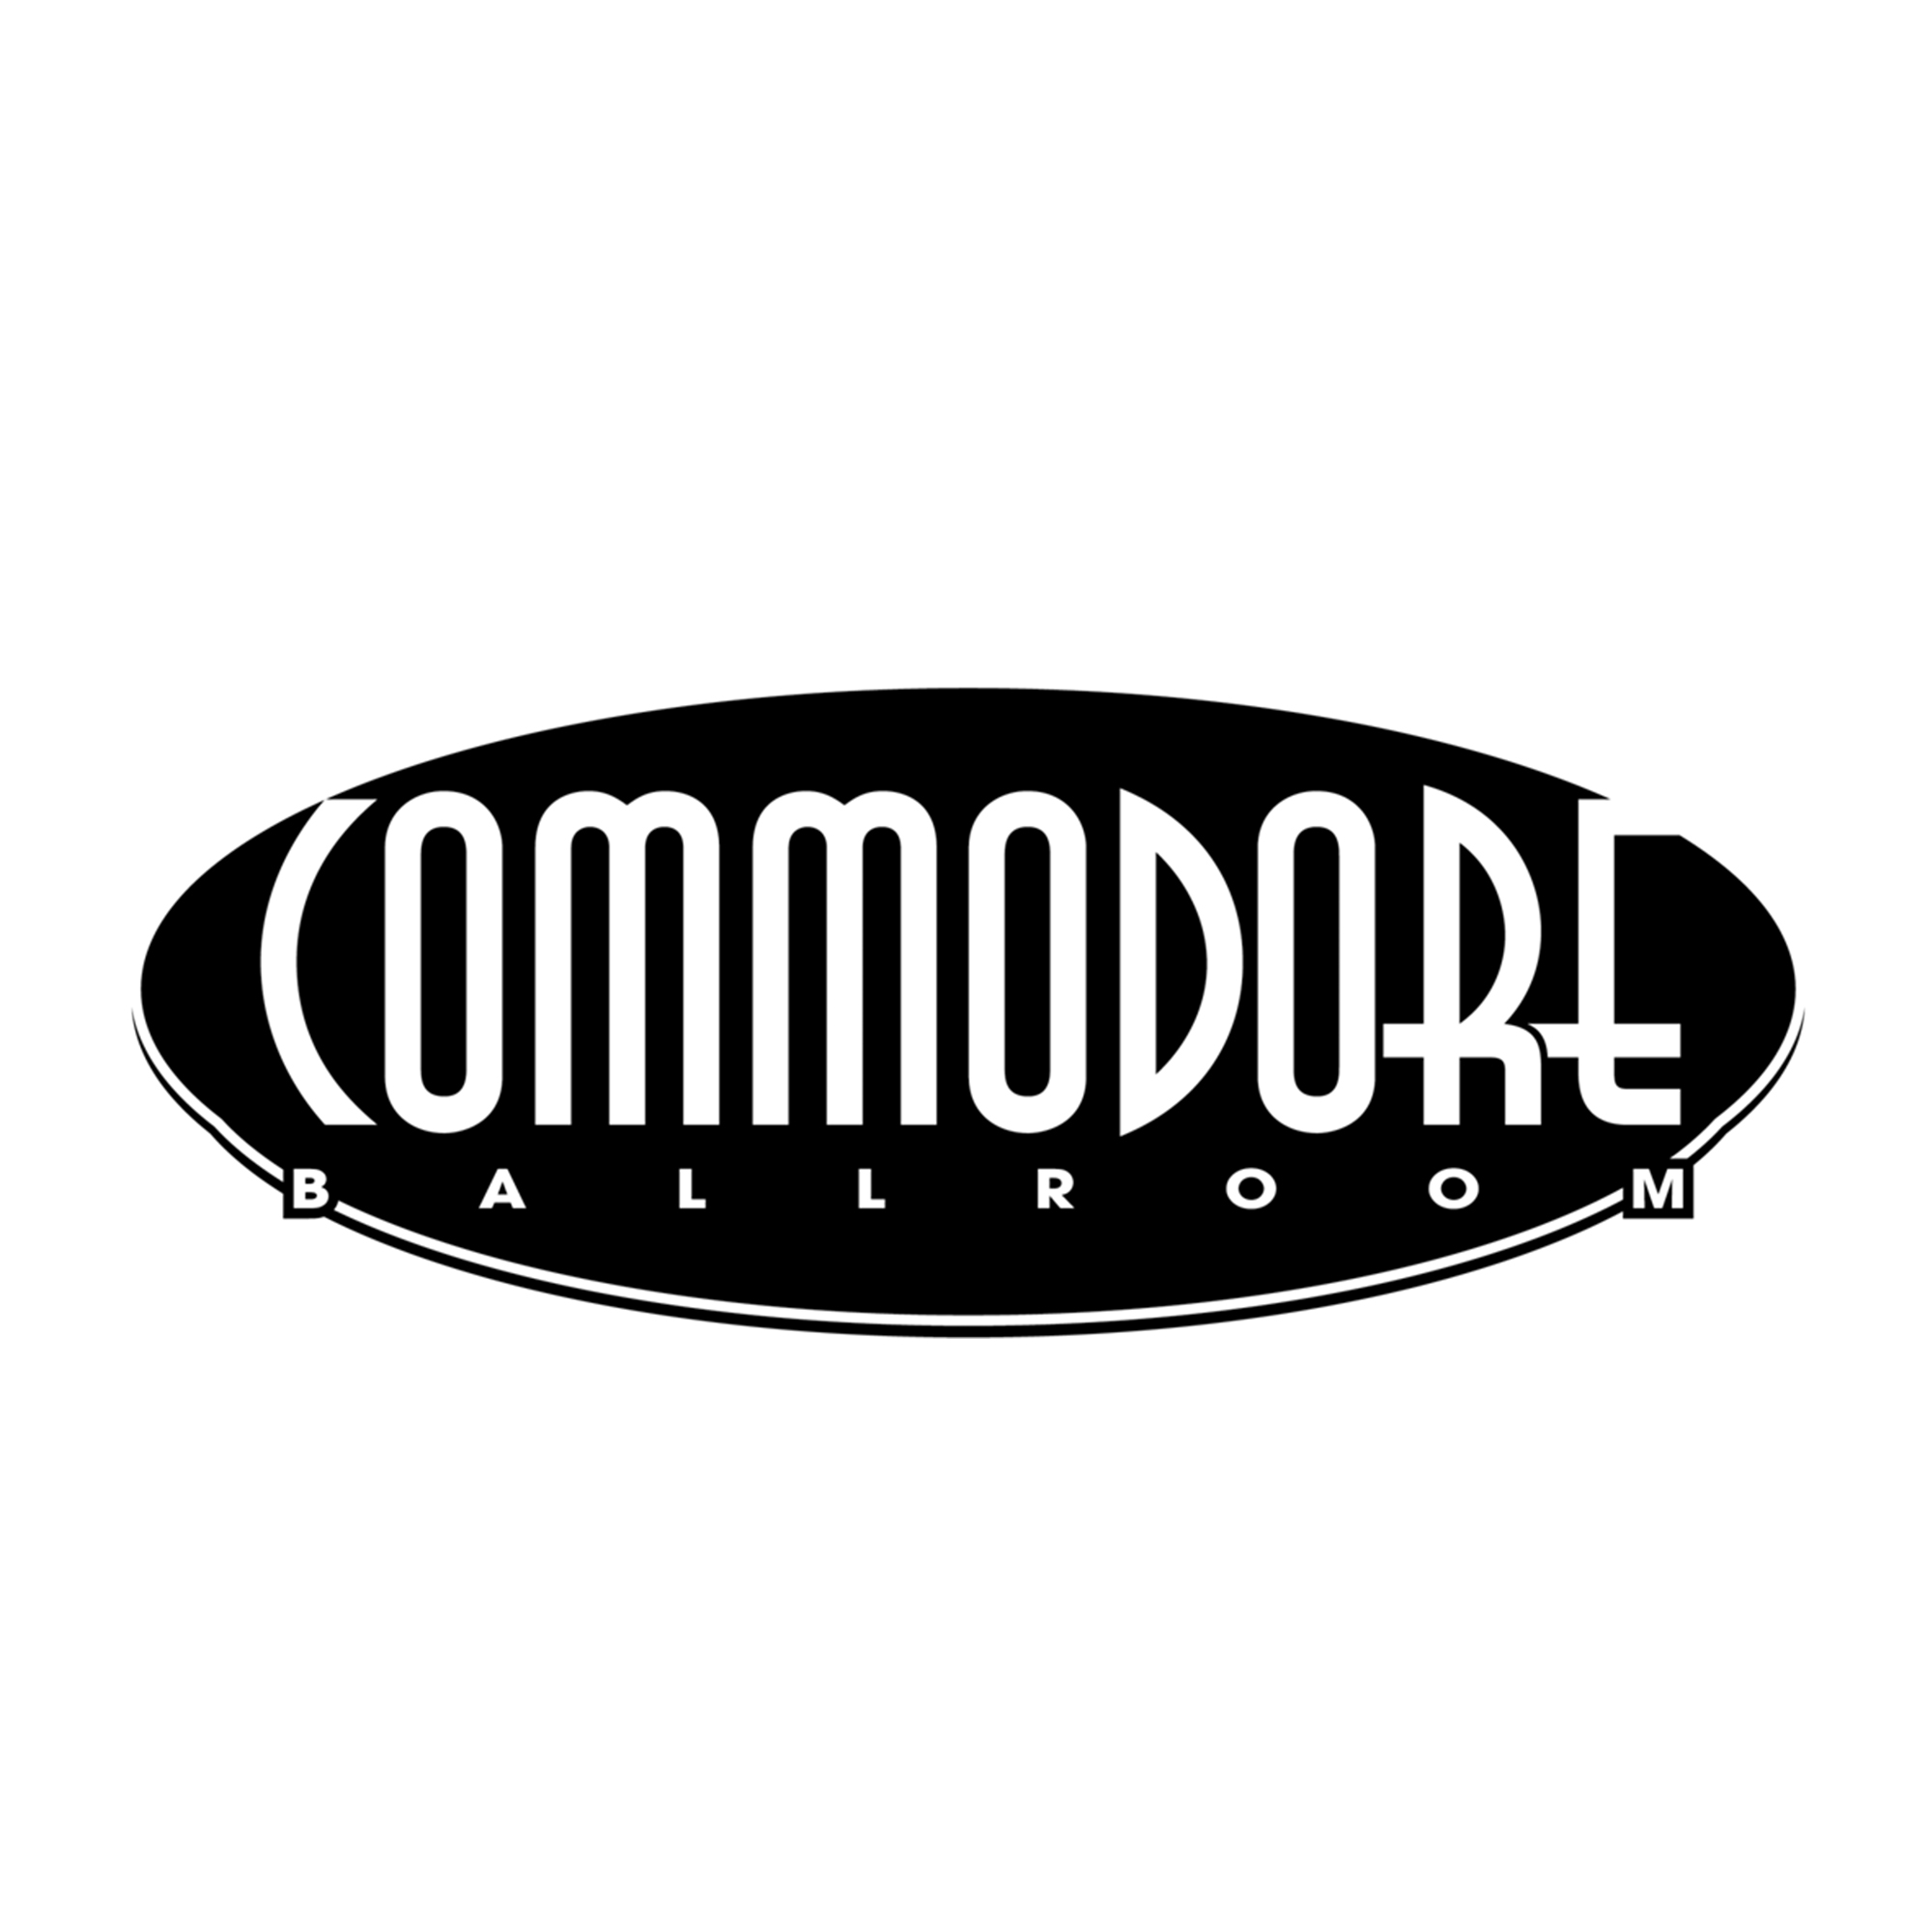 The Commodore Ballroom